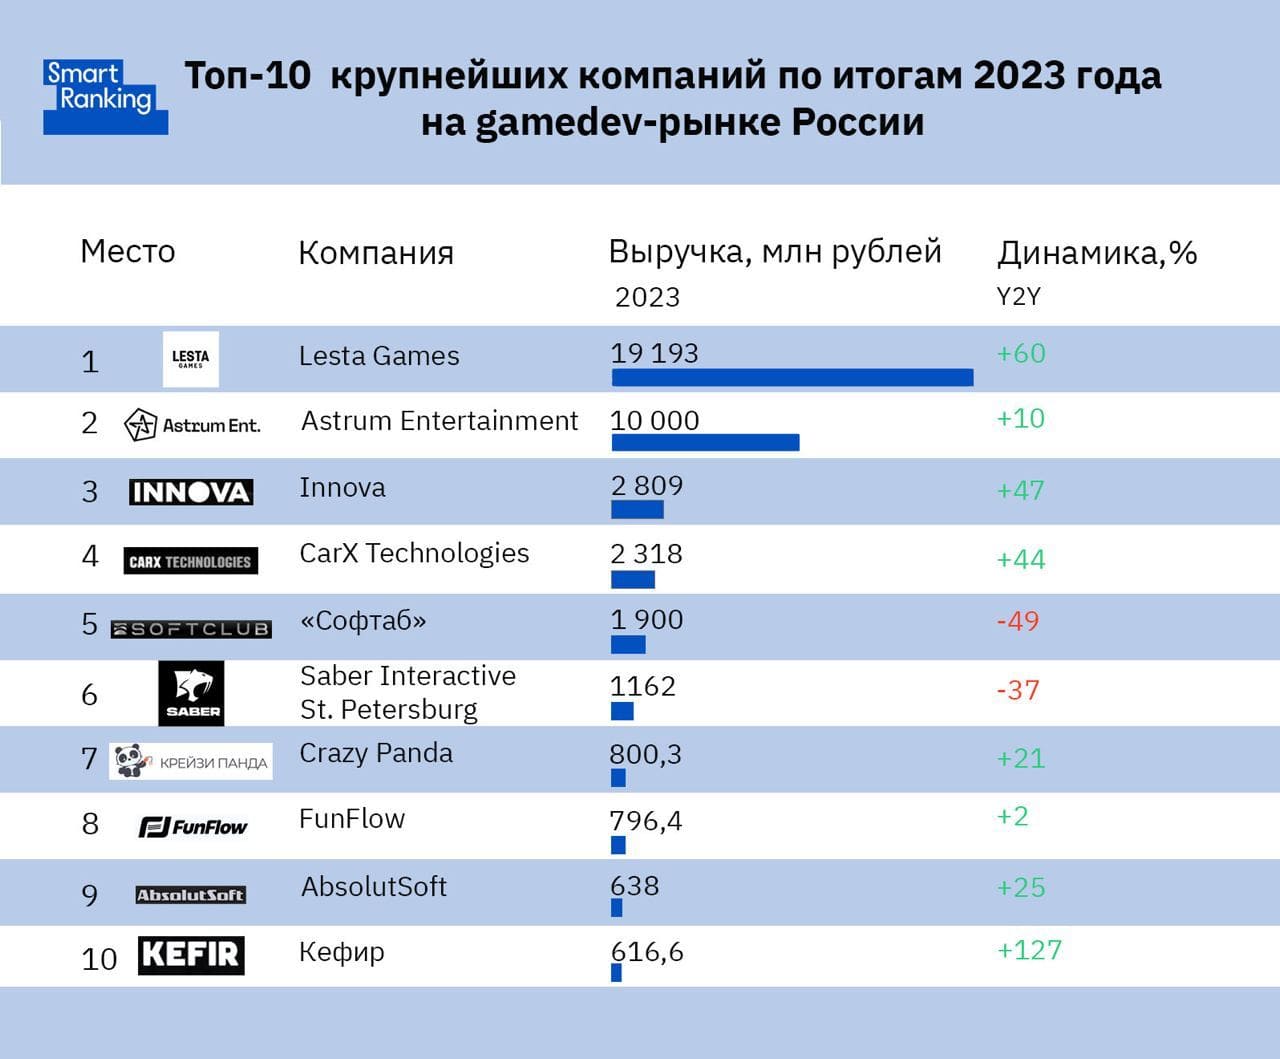 Топ-10 GameDev-компаний России за 2023 год